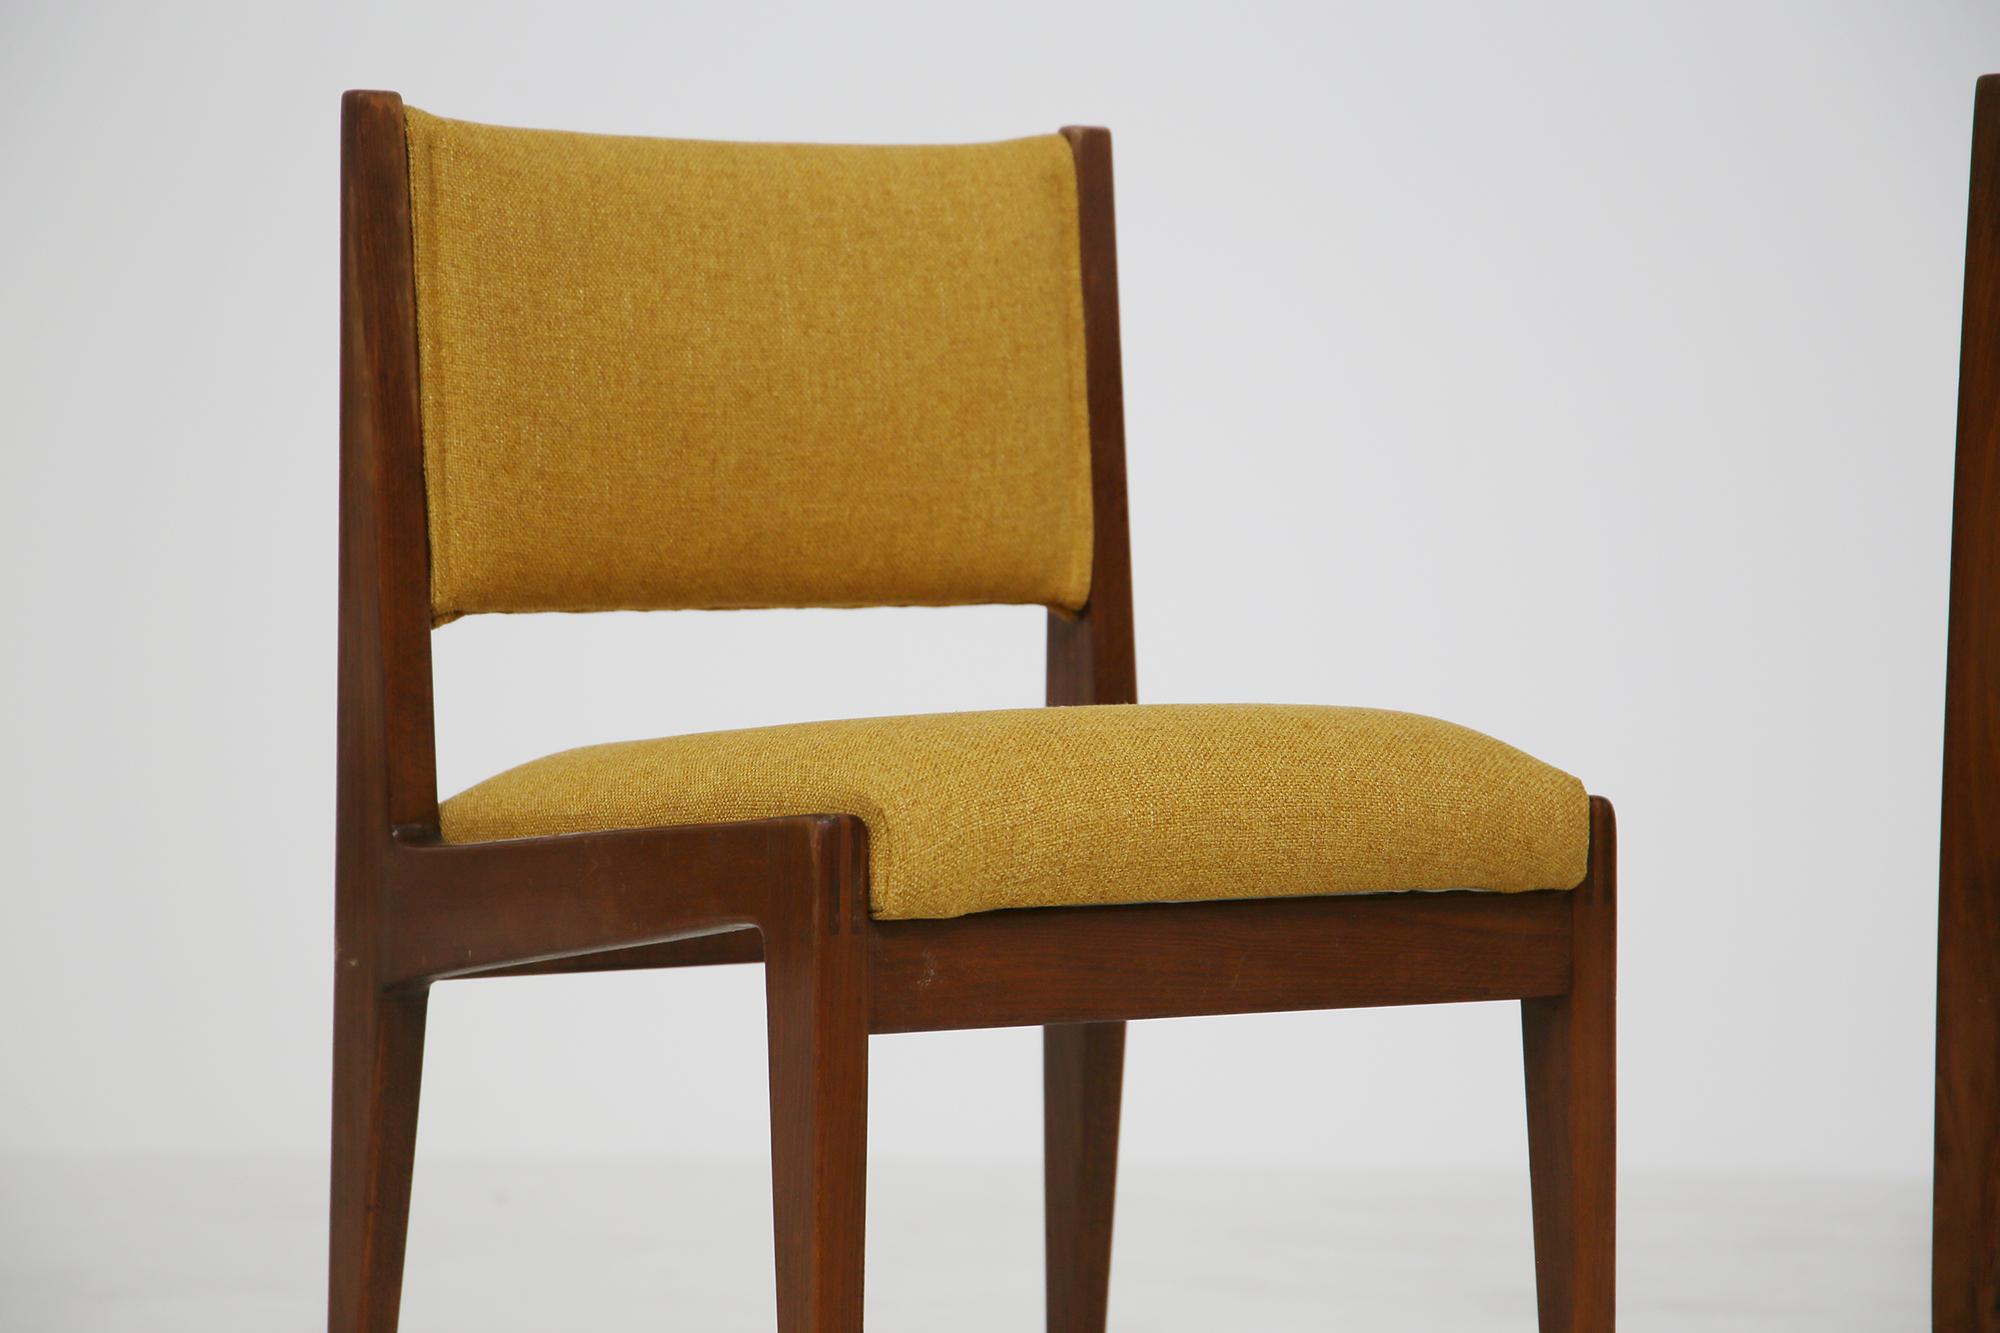 Set aus vier gelben Stühlen von Gianfranco Frattini für Bottega Ghianda, 1960er Jahre (Baumwolle)